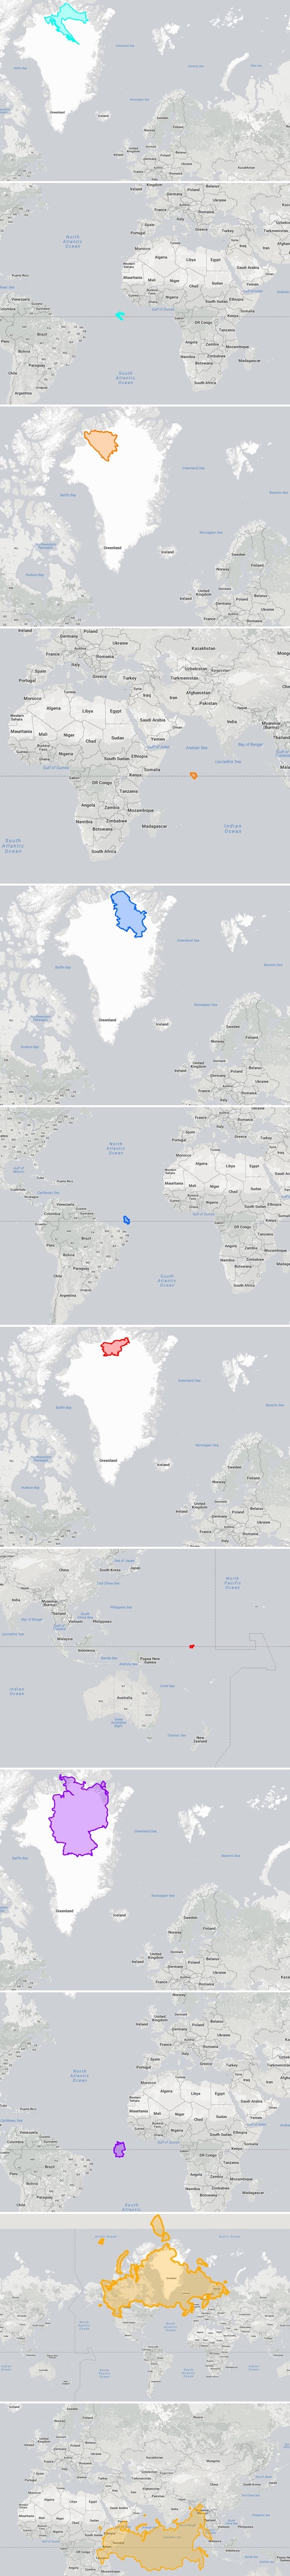 Evo kako bi Hrvatska i druge države izgledale kad bismo ih smjestili na ekvator ili krajnji sjever našeg planeta